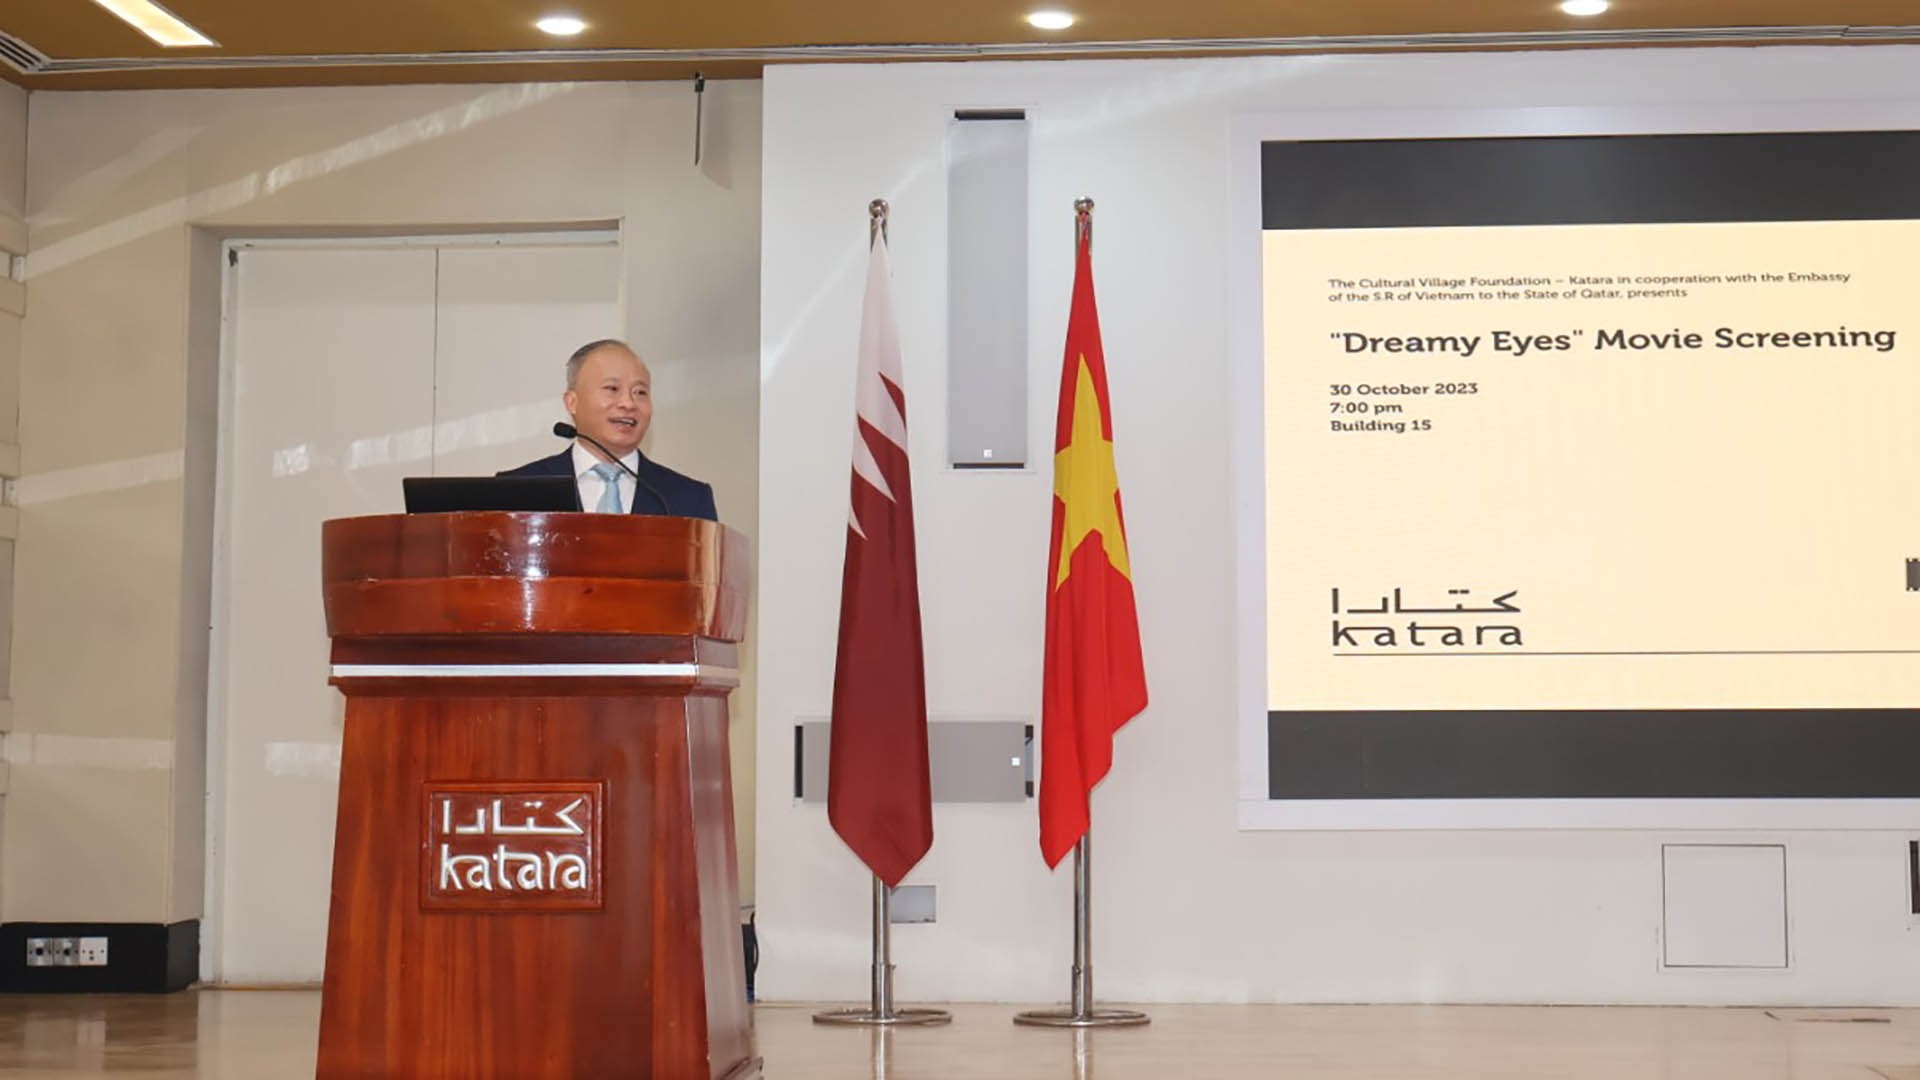 Đại sứ Trần Đức Hùng phát biểu khai mạc buổi chiếu phim.